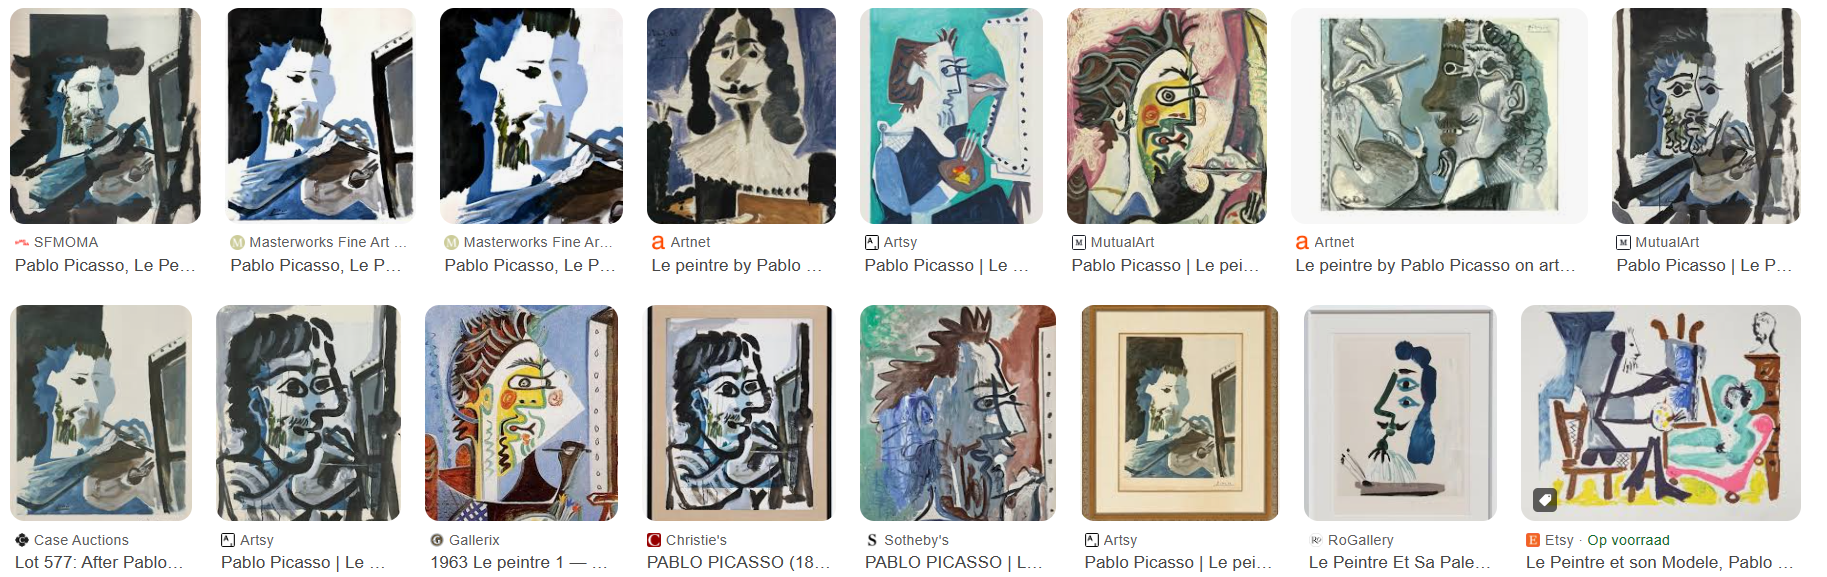 Pablo Picasso "La peintre" paintings overview